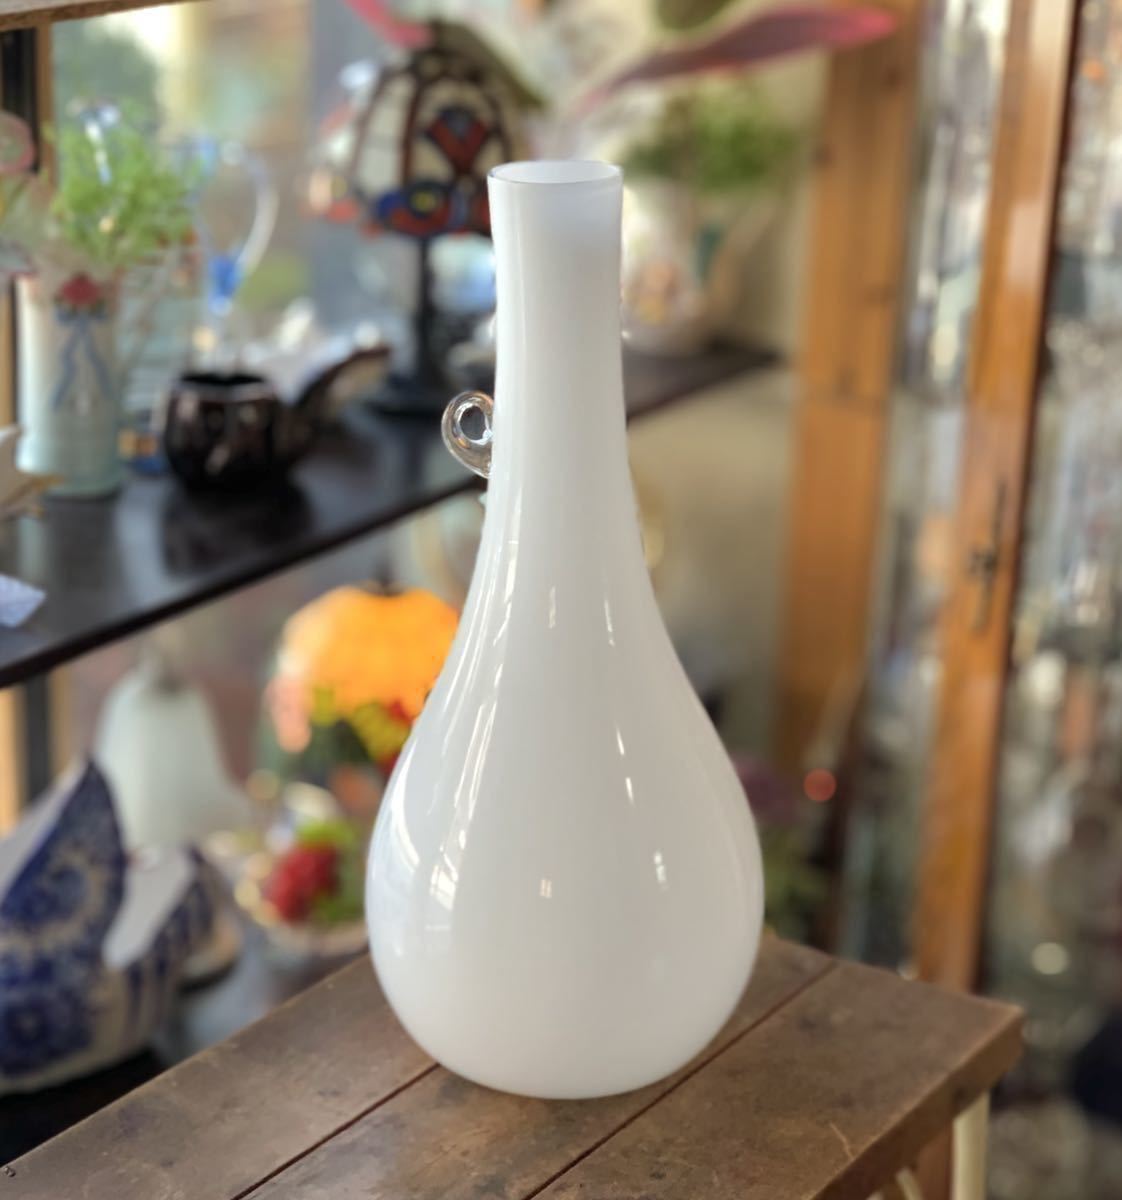 【大型】 花瓶 フラワーベース ガラス 白 H59cm 置物 飾り インテリア 花器 白 ホワイト